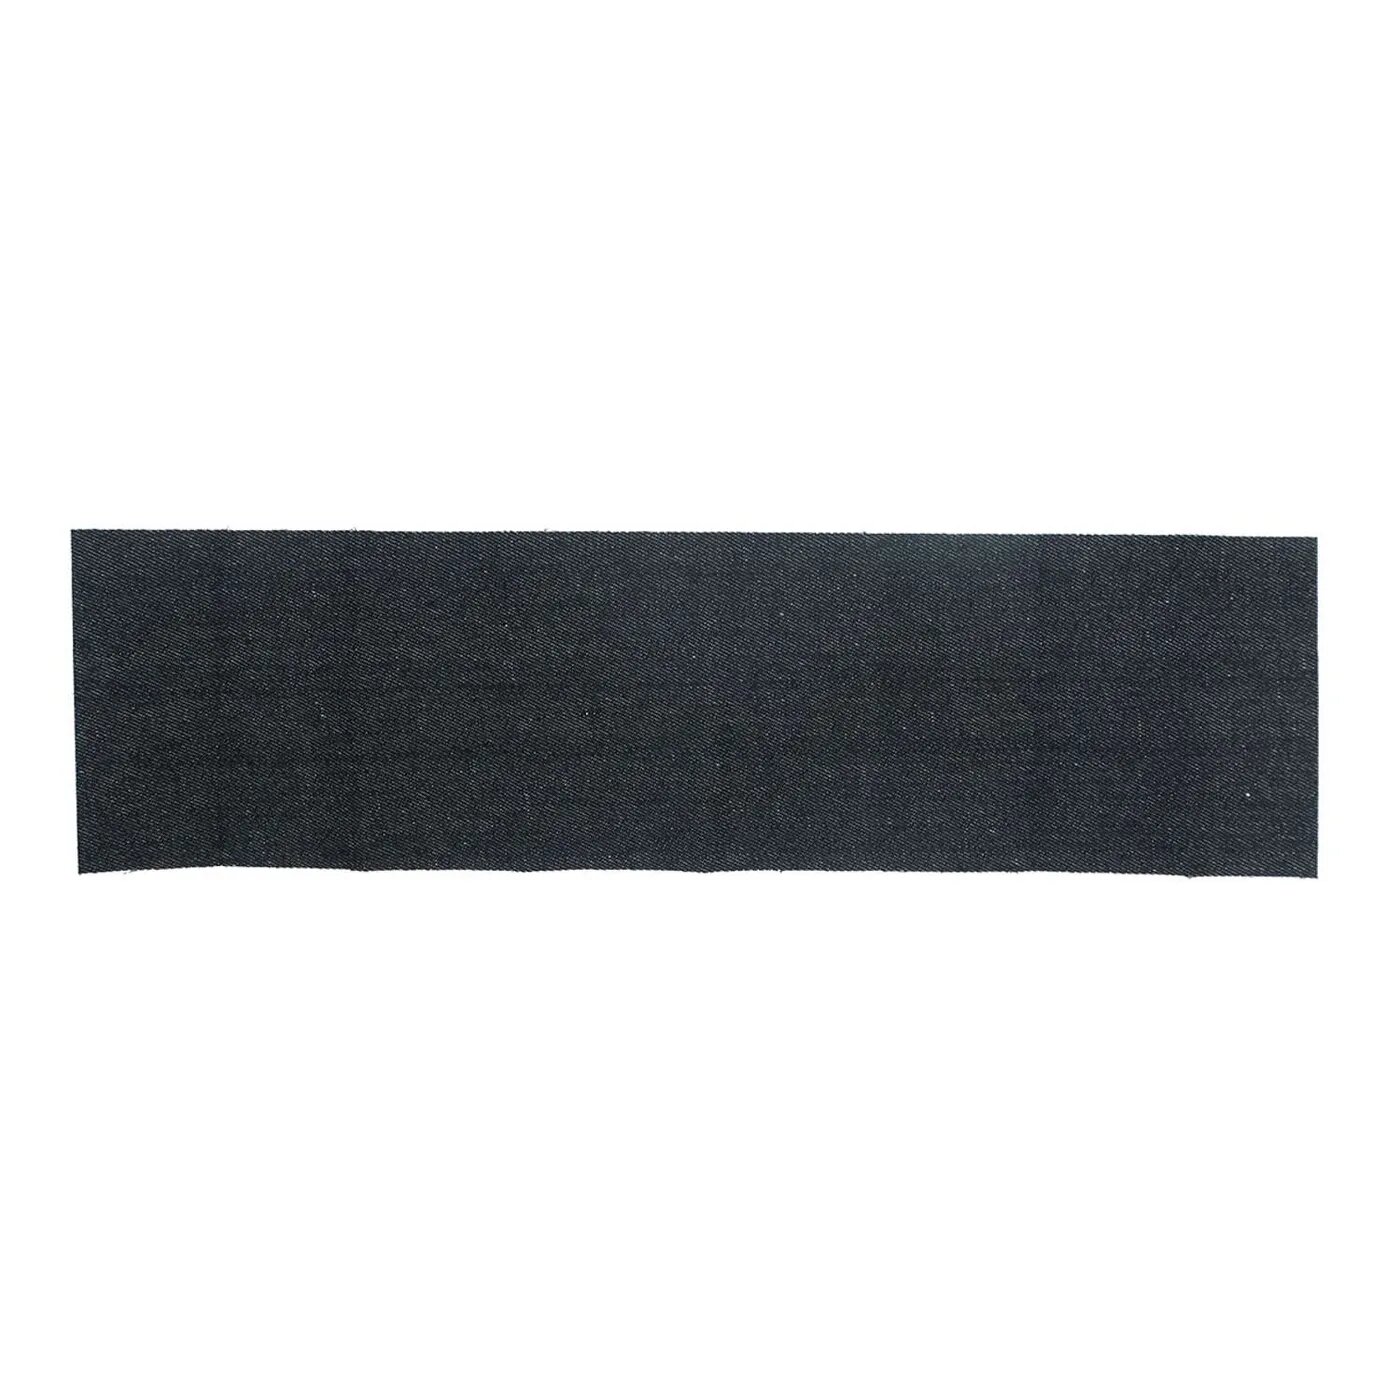 Заплатка Prym термоклеевая из джинсовой ткани для украшения одежды 12х45 см черный джинс 929552